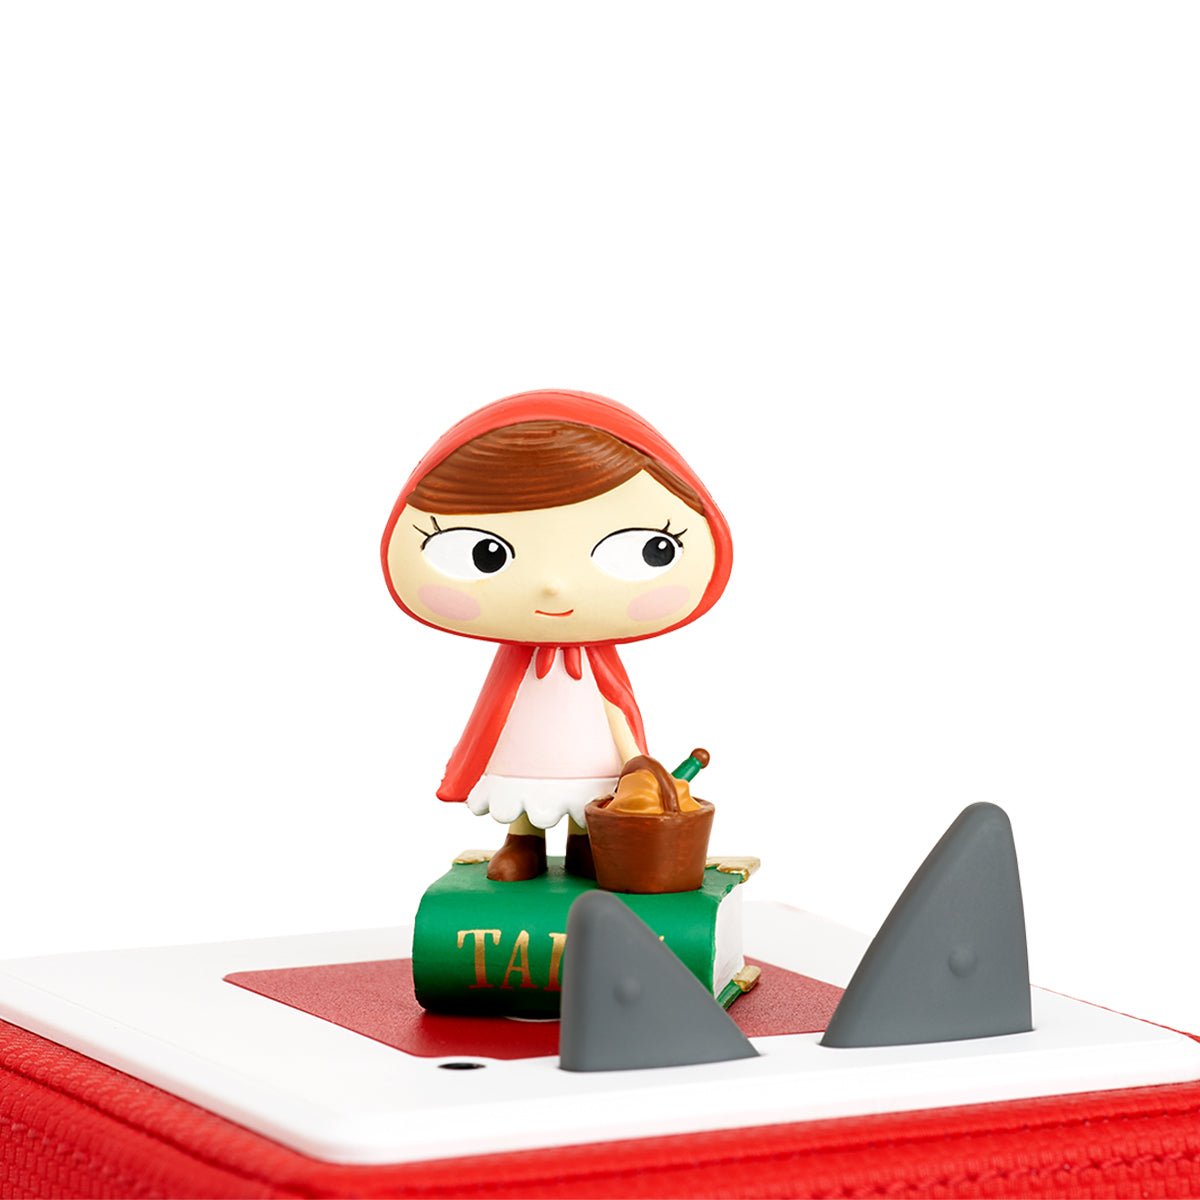 Tonies Disney Favorite Tales: Red Riding Hood Audio Play Figurine - ANB Baby -8401474012123+ years